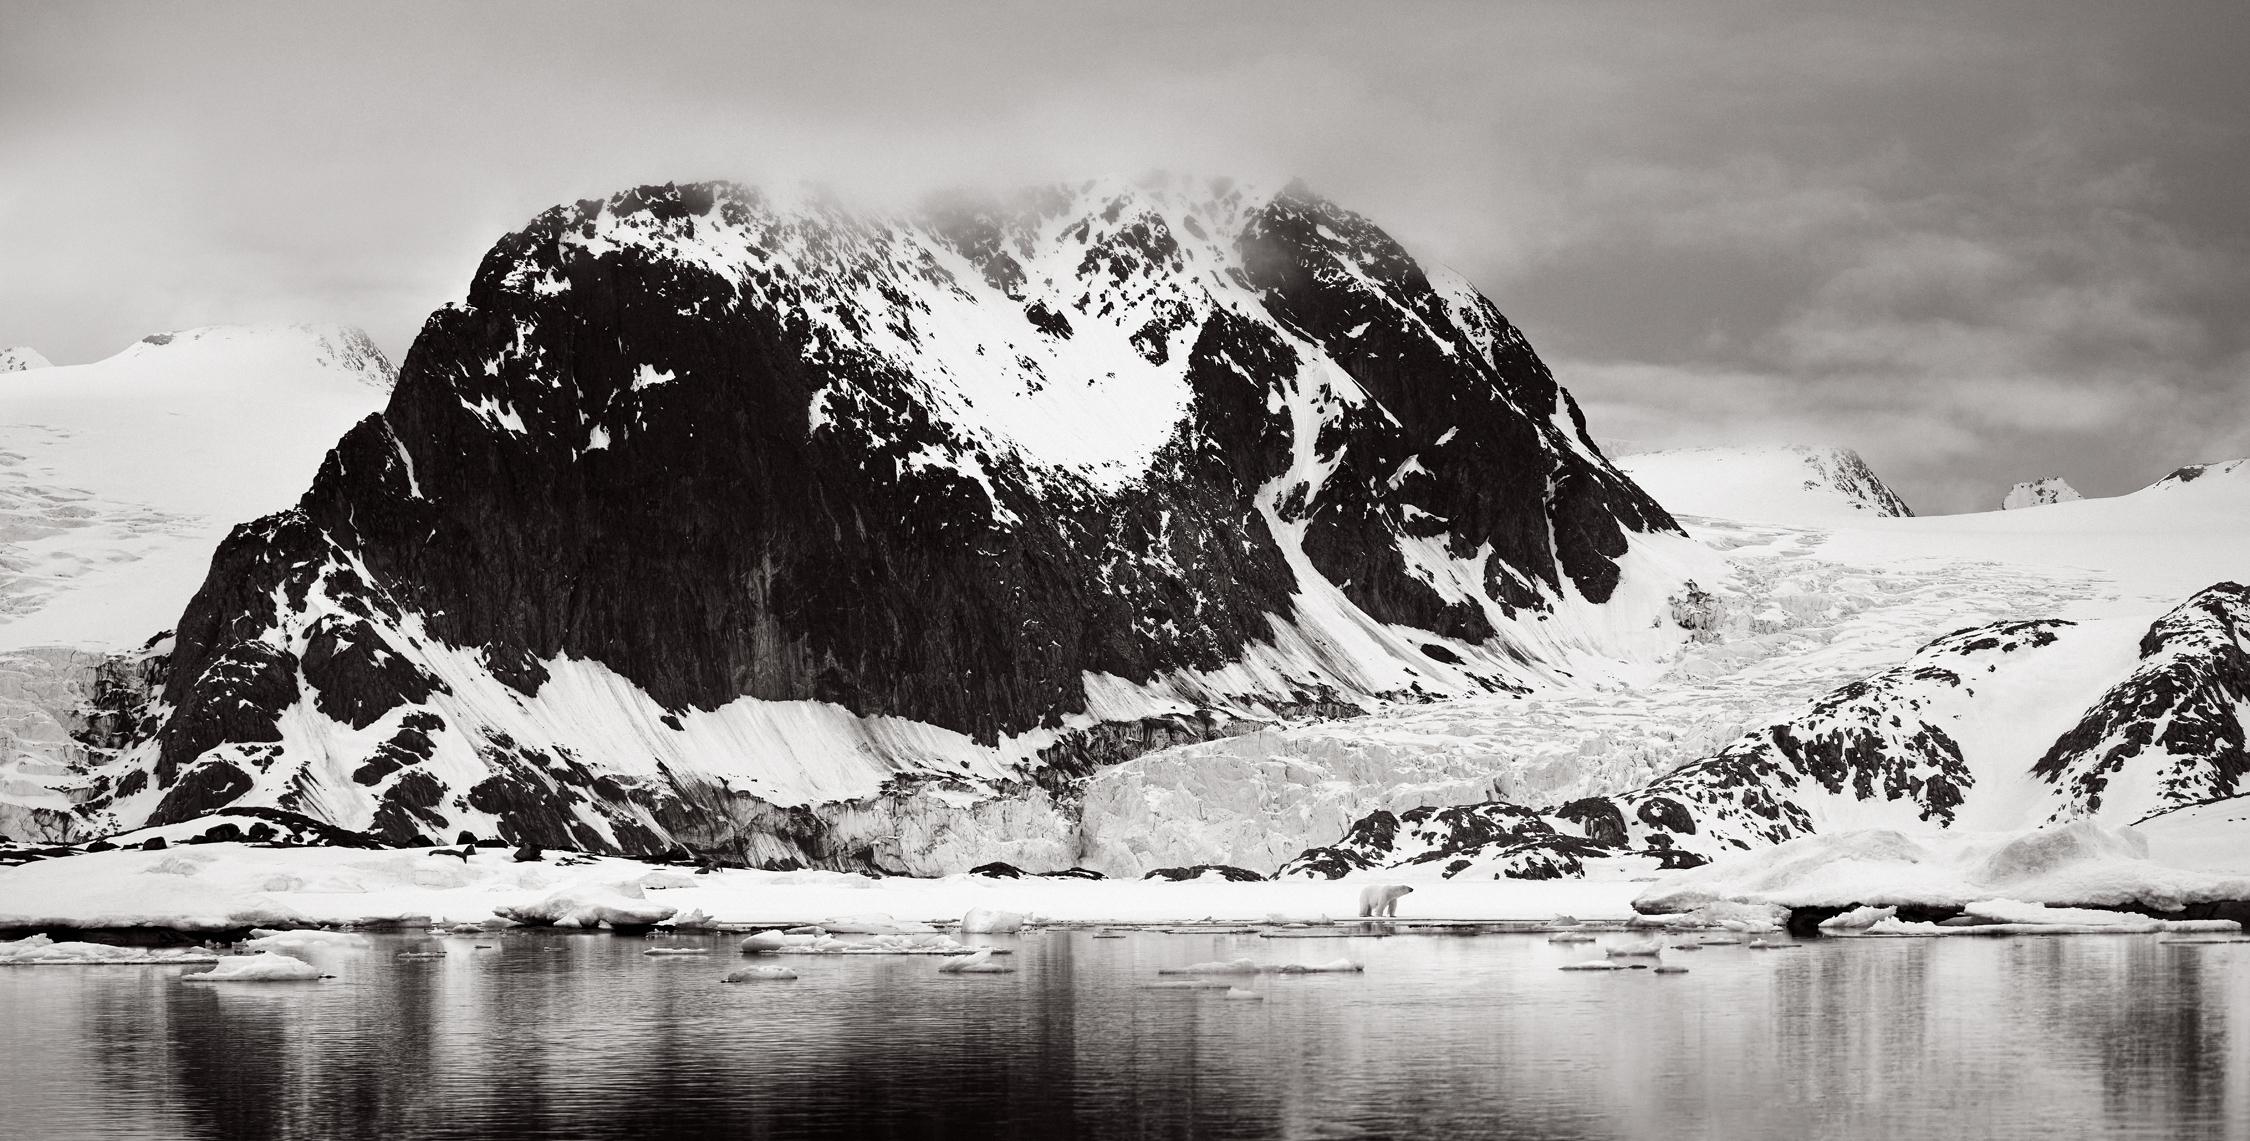 Black and White Photograph Drew Doggett - L'ours polaire au bord de l'eau, surréaliste, cinématographique